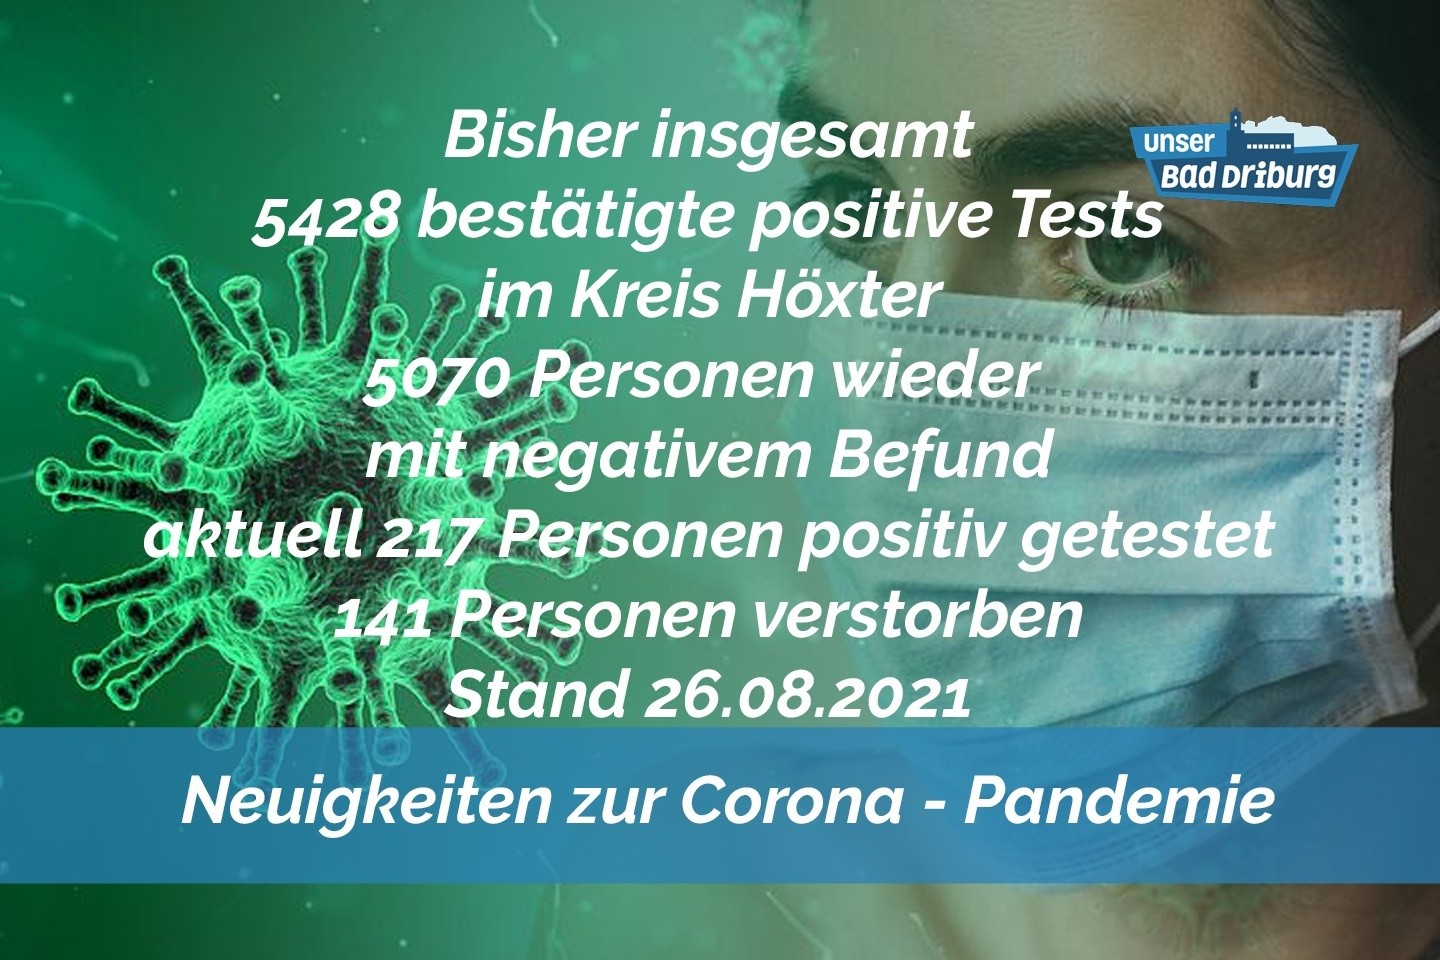 Update 26. August: 18 weitere amtlich positive Tests im Kreis Höxter